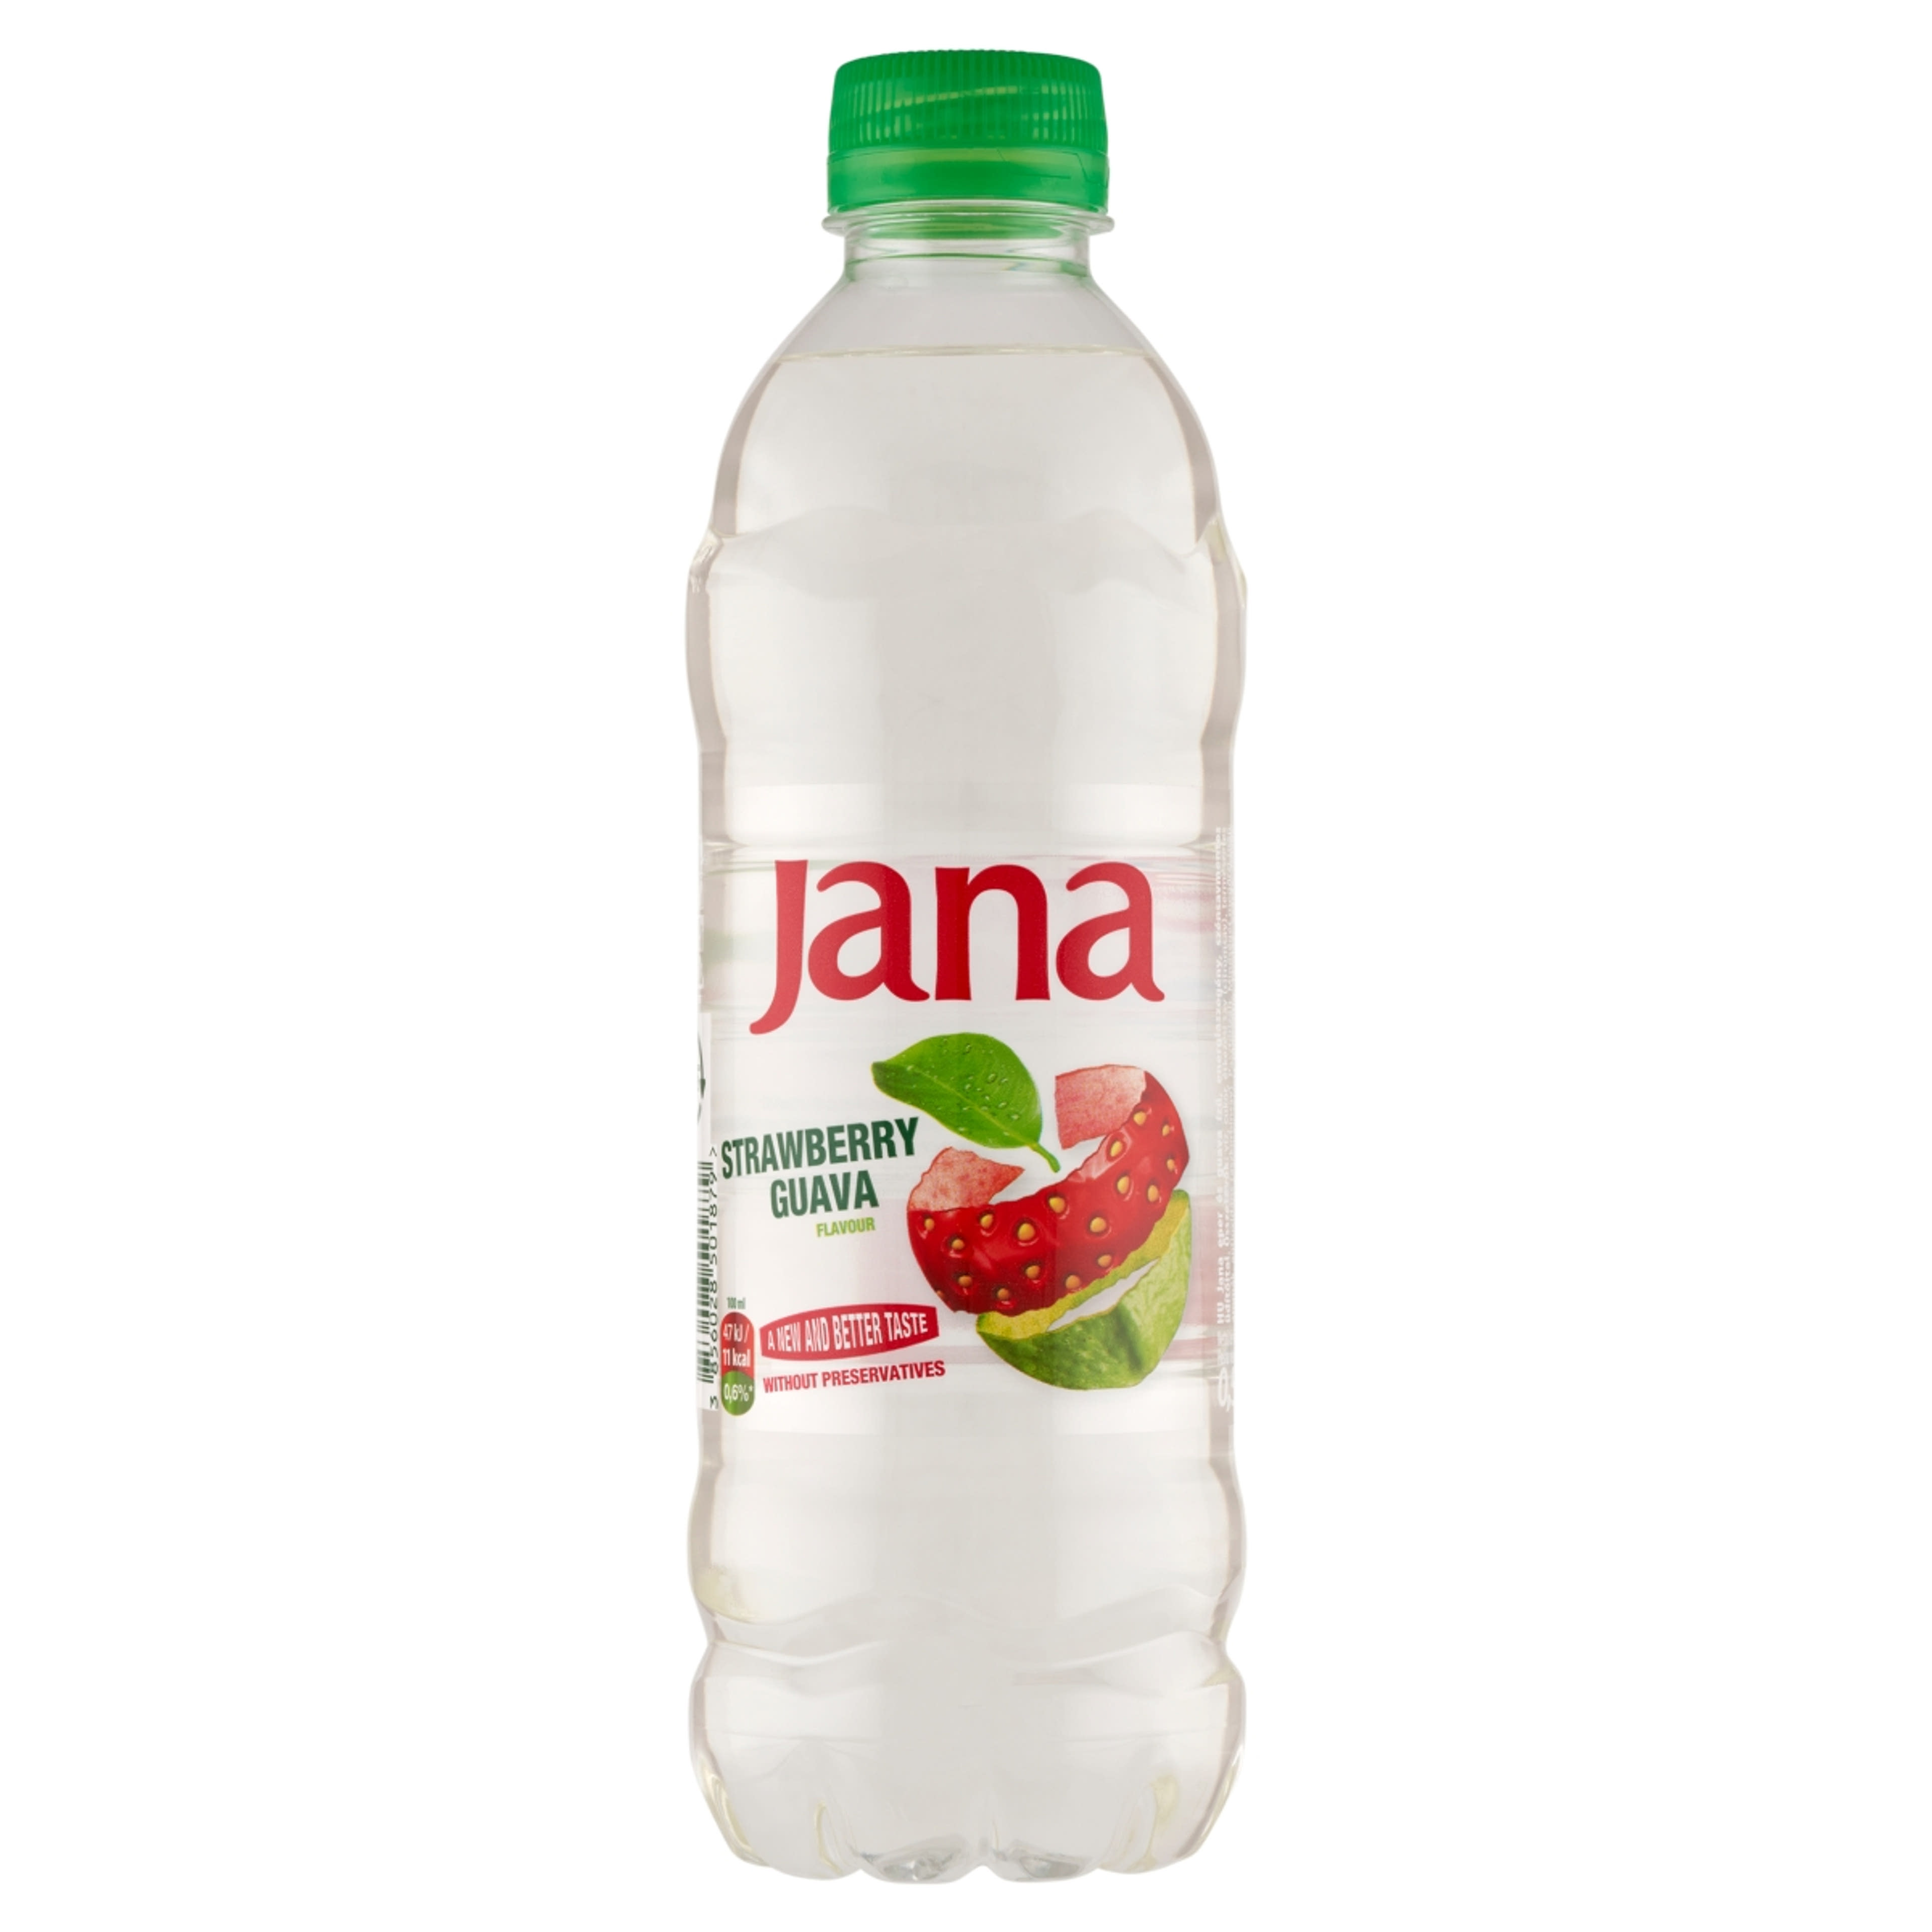 Jana ízesített szénsavmentes ásványvíz eper-guava - 500 ml